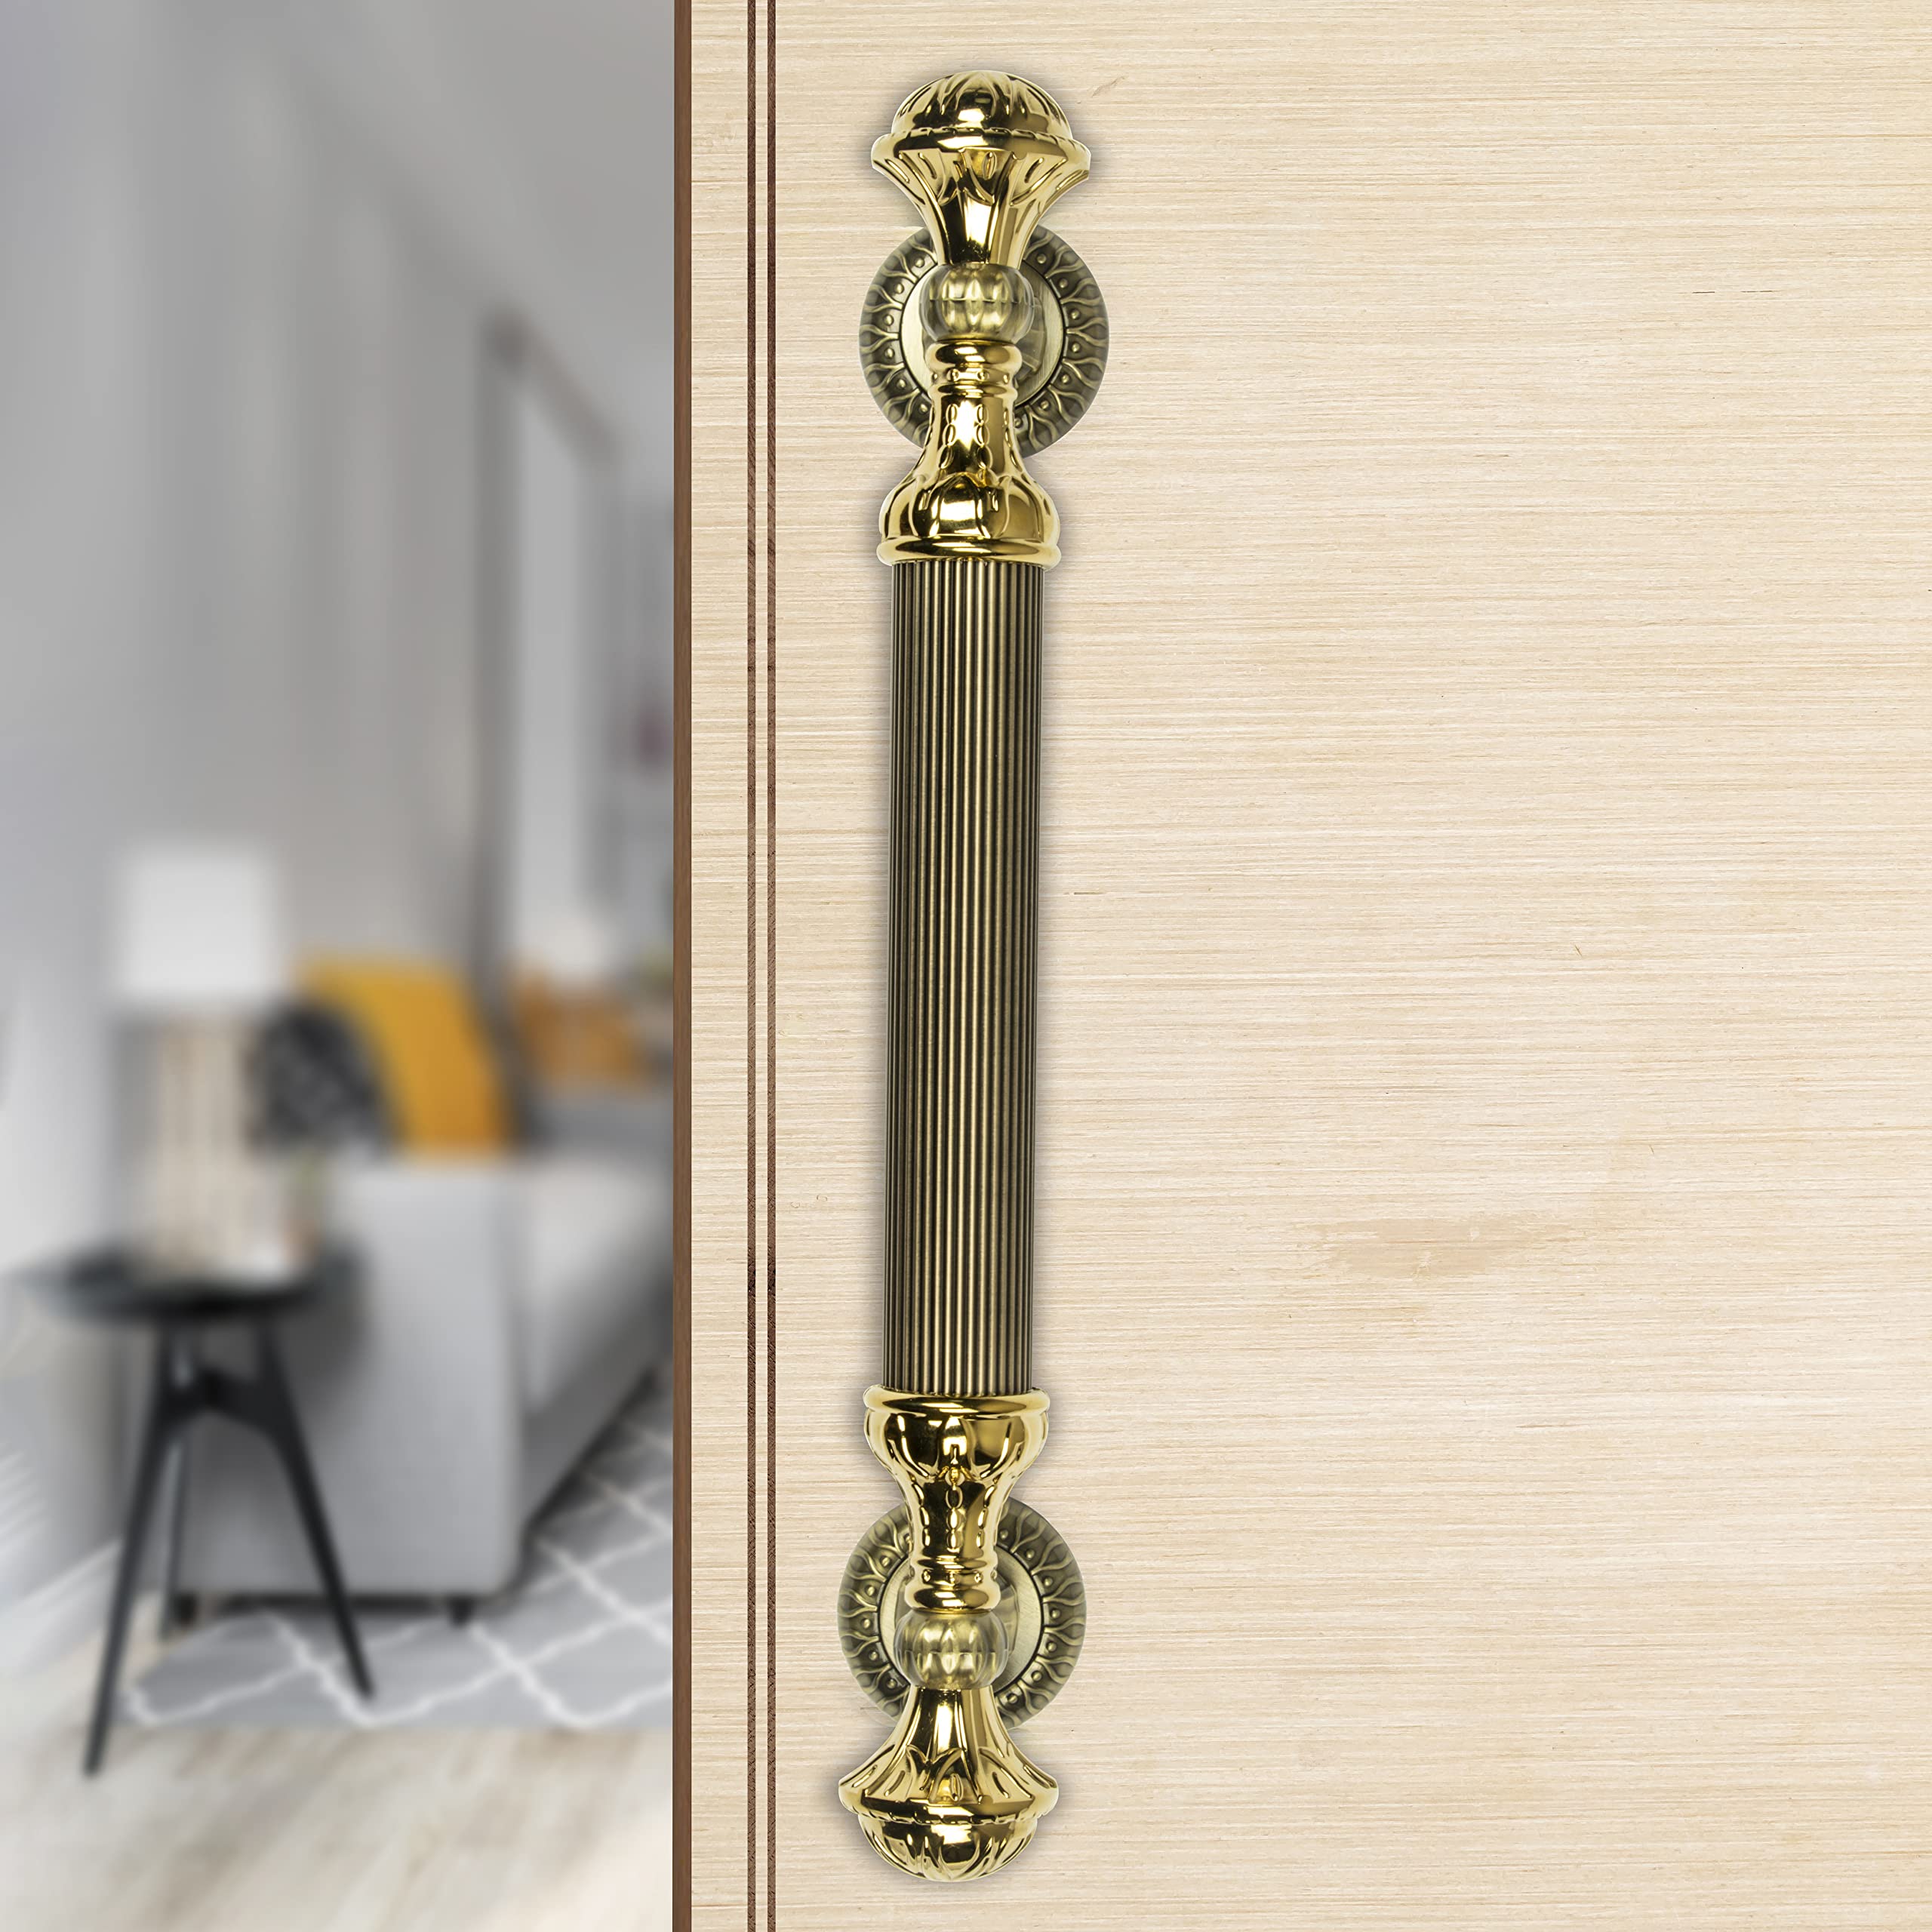 Plantex Heavy Duty Door Handle/Door & Home Decor/15-inches Main Door Handle/Door Pull Push Handle - Pack of 1 ( 320-Brass Antique and Gold Finish)